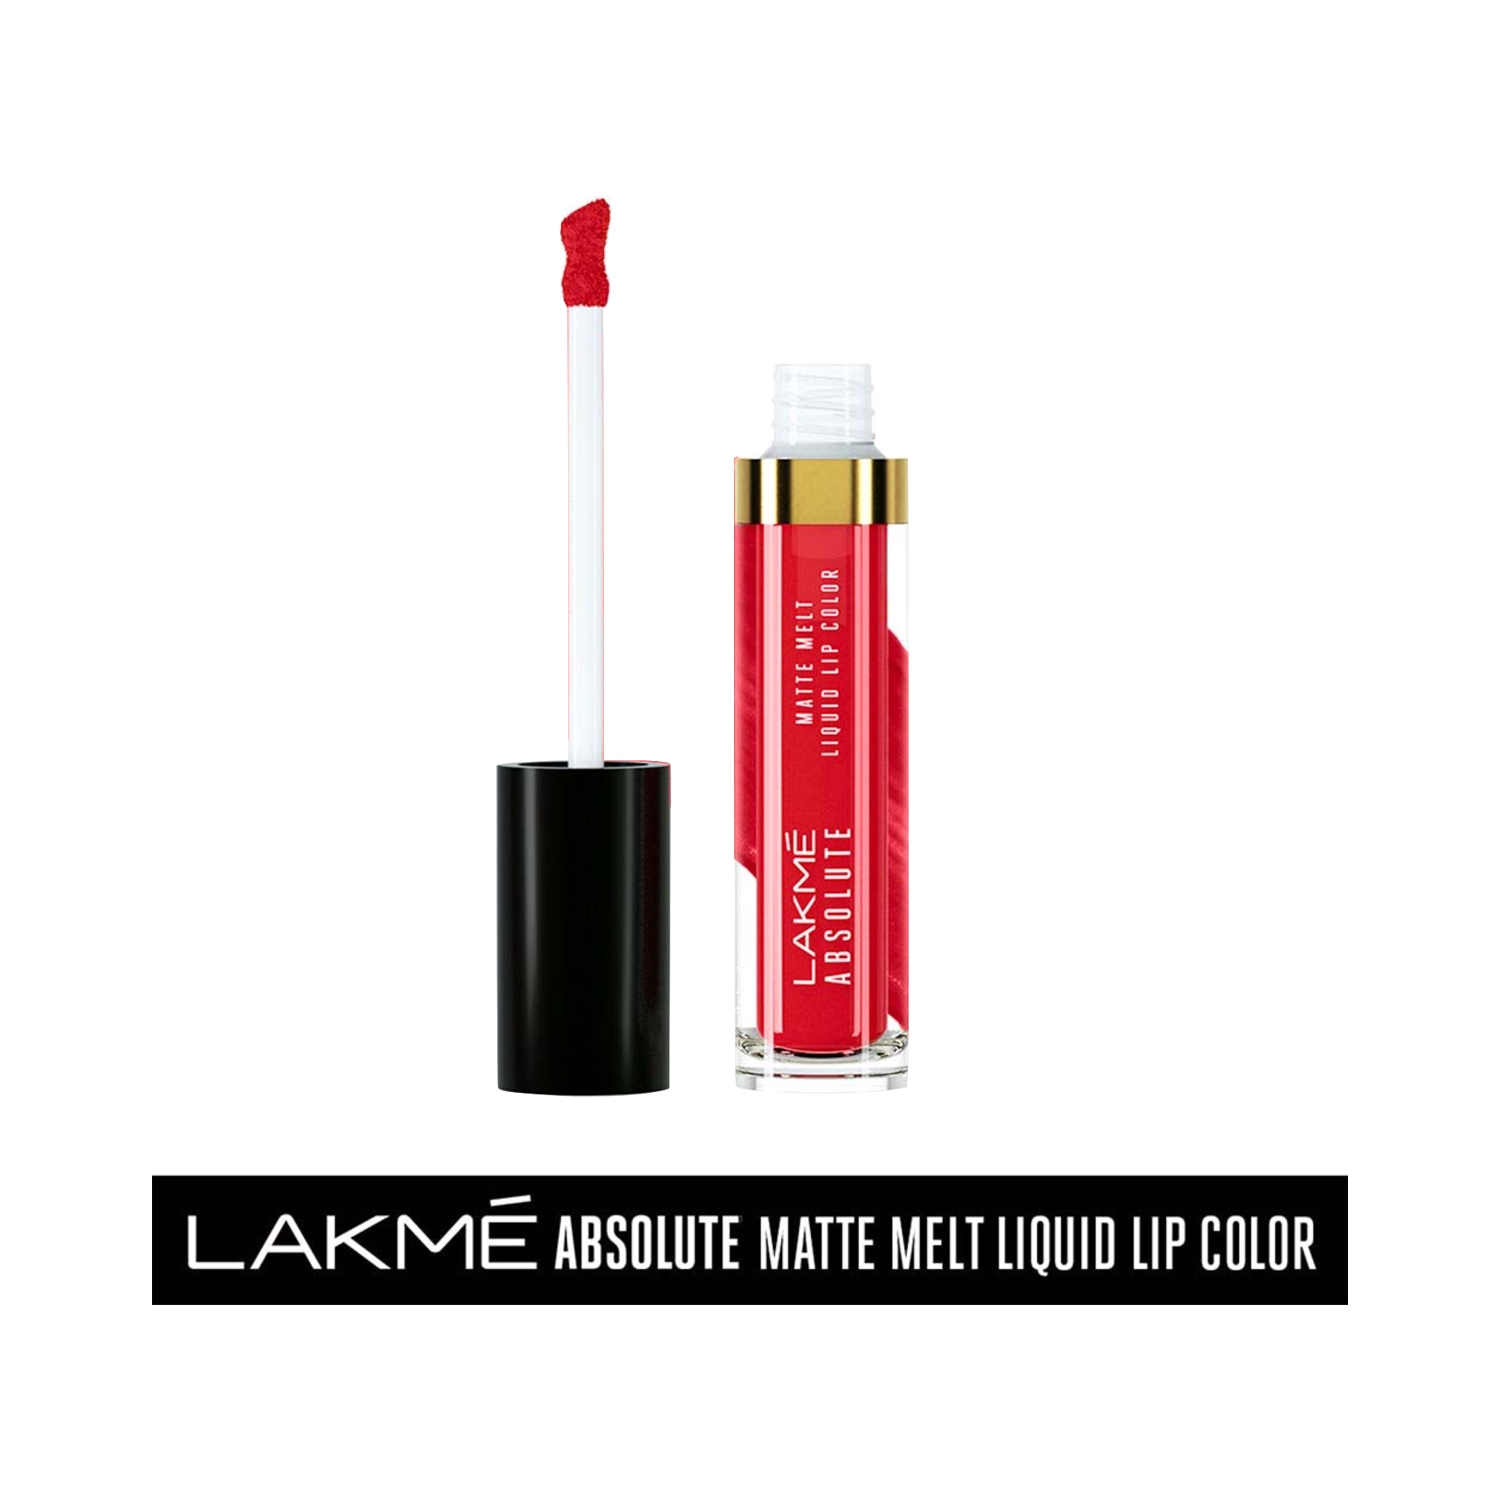 Lakme | Lakme Absolute Matte Melt Liquid Lip Color - Firestarter Red (6ml)